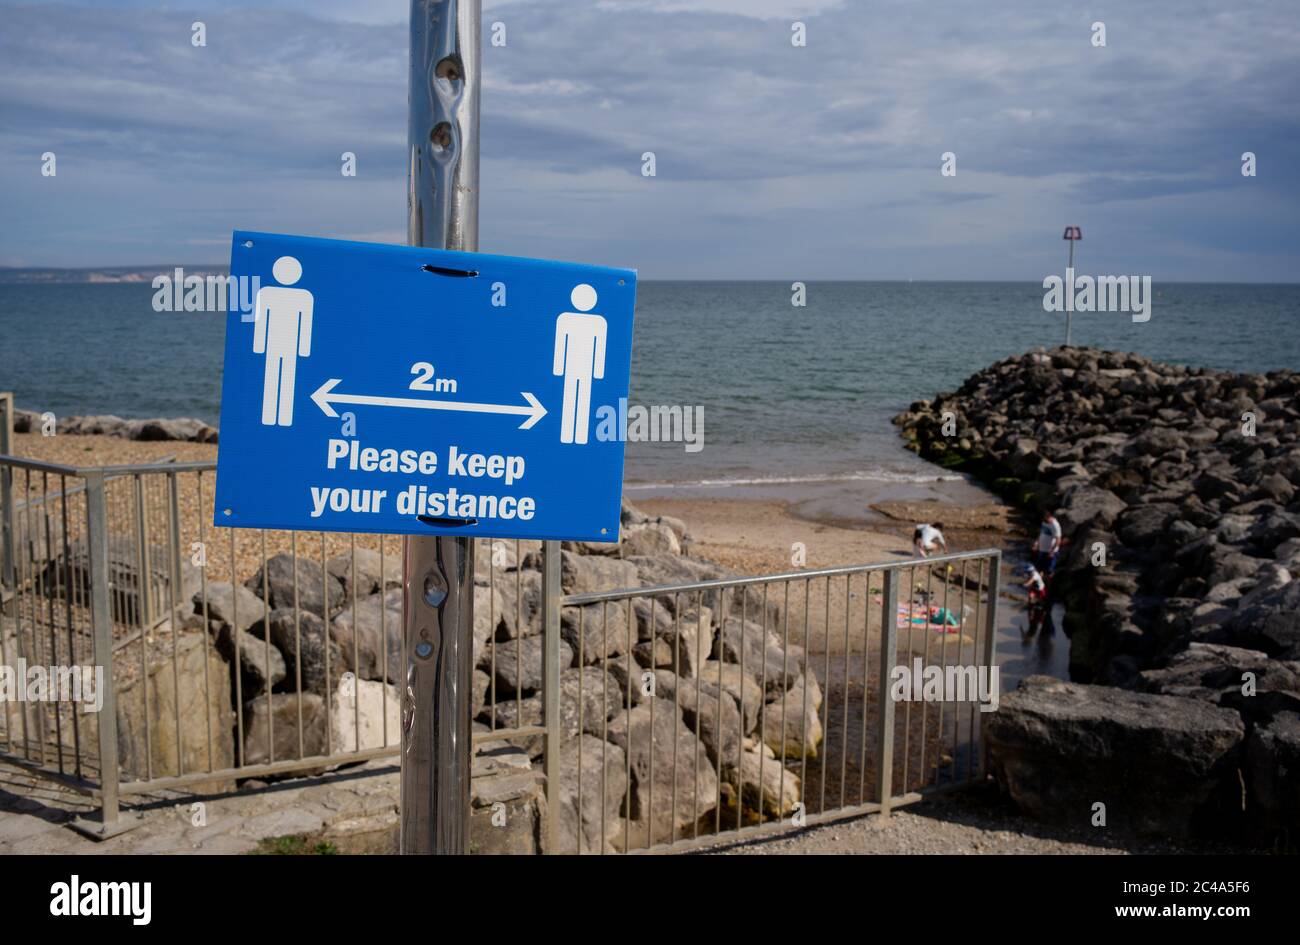 Zwei Meter halten Abstand Sozial distanzierenden Zeichen am highcliffe Strand, bournemouth. Stockfoto